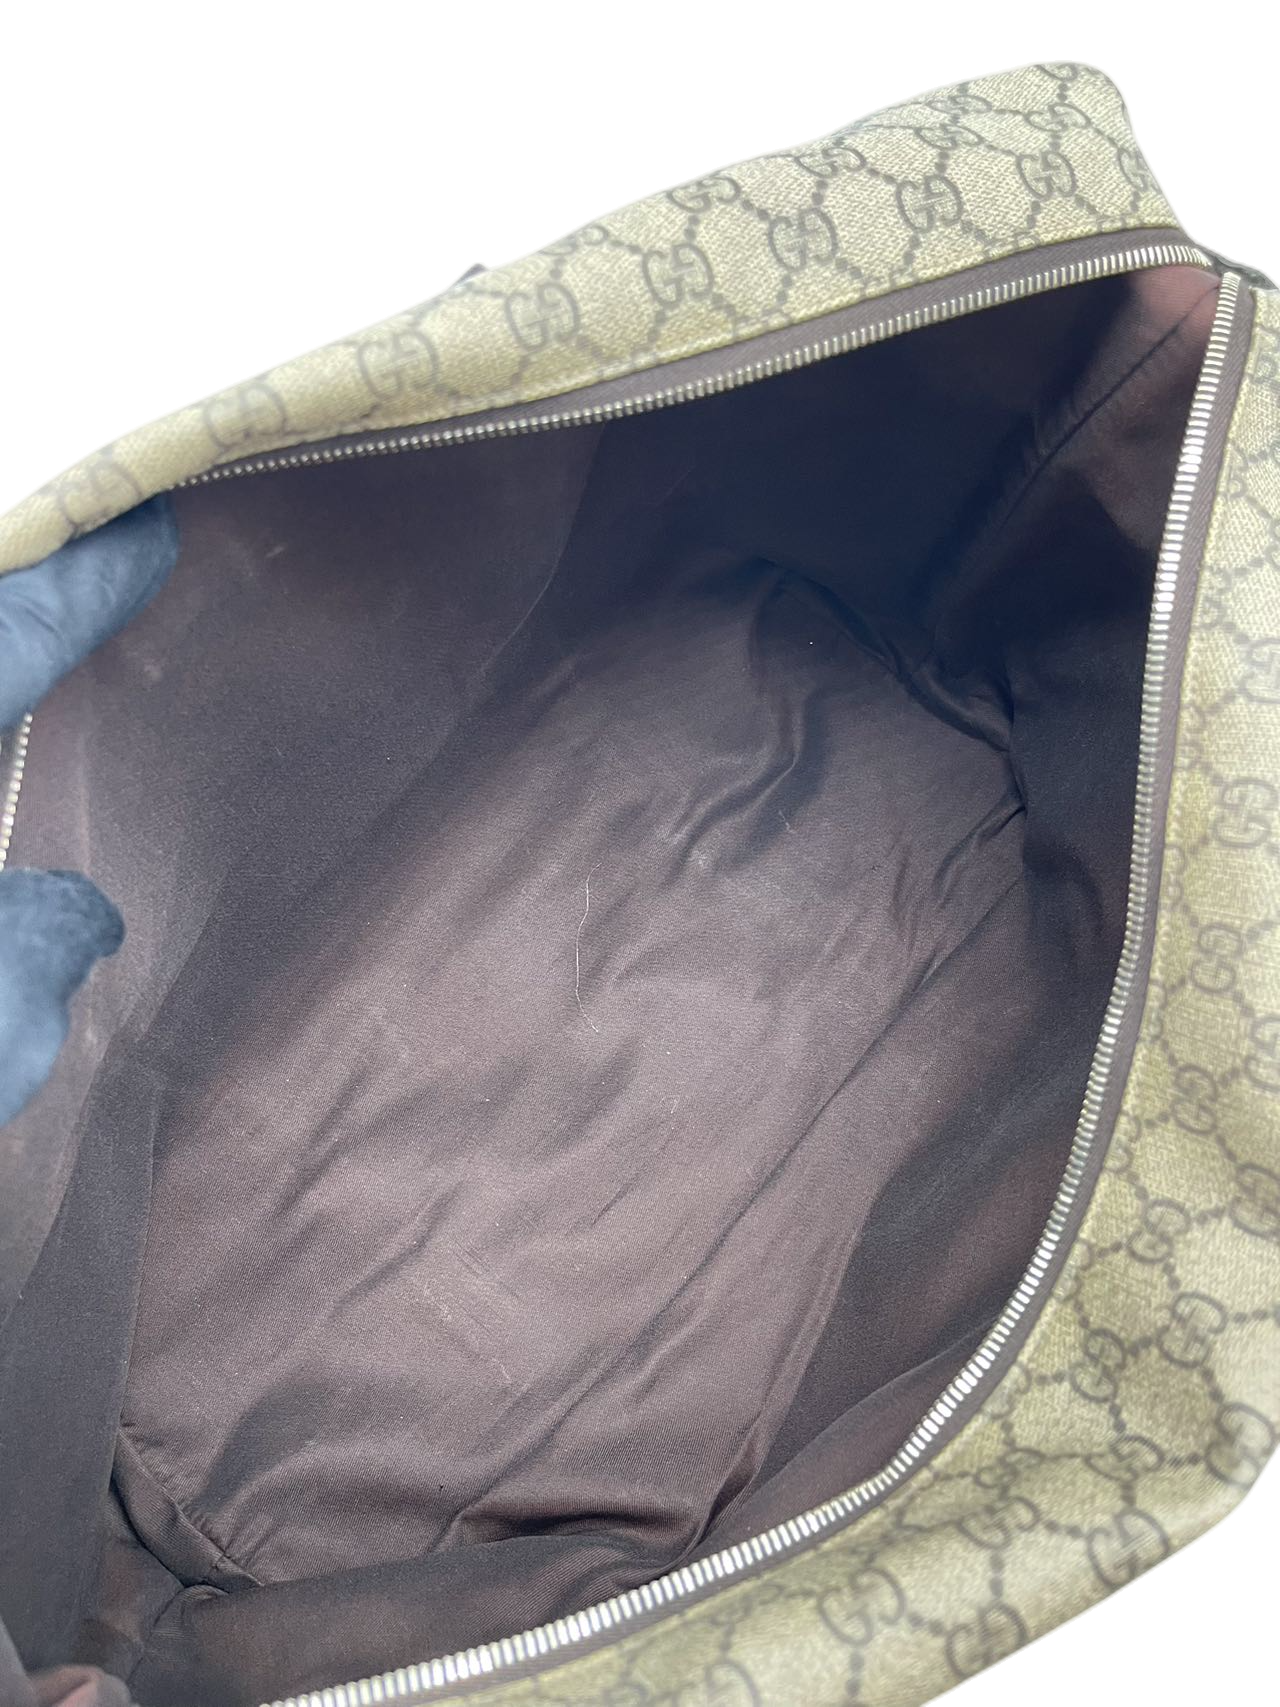 Preloved Gucci GG Logo Printed Canvas Travel Bag Large Totes Shoulder Bag